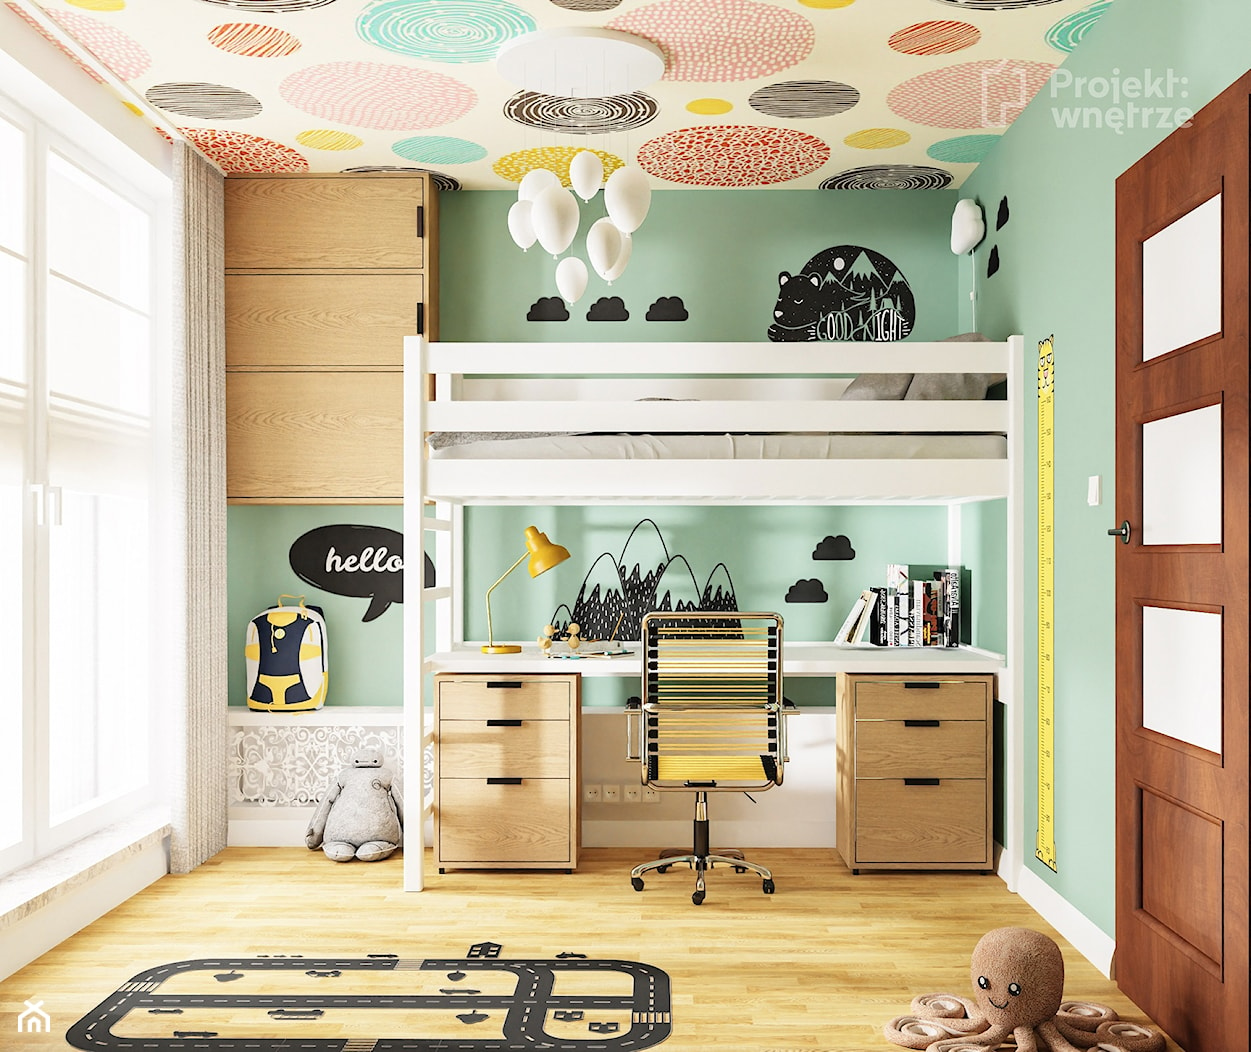 Mały pokój dziecka pokój dla chłopca styl skandynawski łóżko piętrowe z biurkiem z szafą naklejki tapeta na suficie strefa spania, strefa nauki motyw balony PROJEKT: WNĘTRZE - zdjęcie od PROJEKT: WNĘTRZE - Homebook